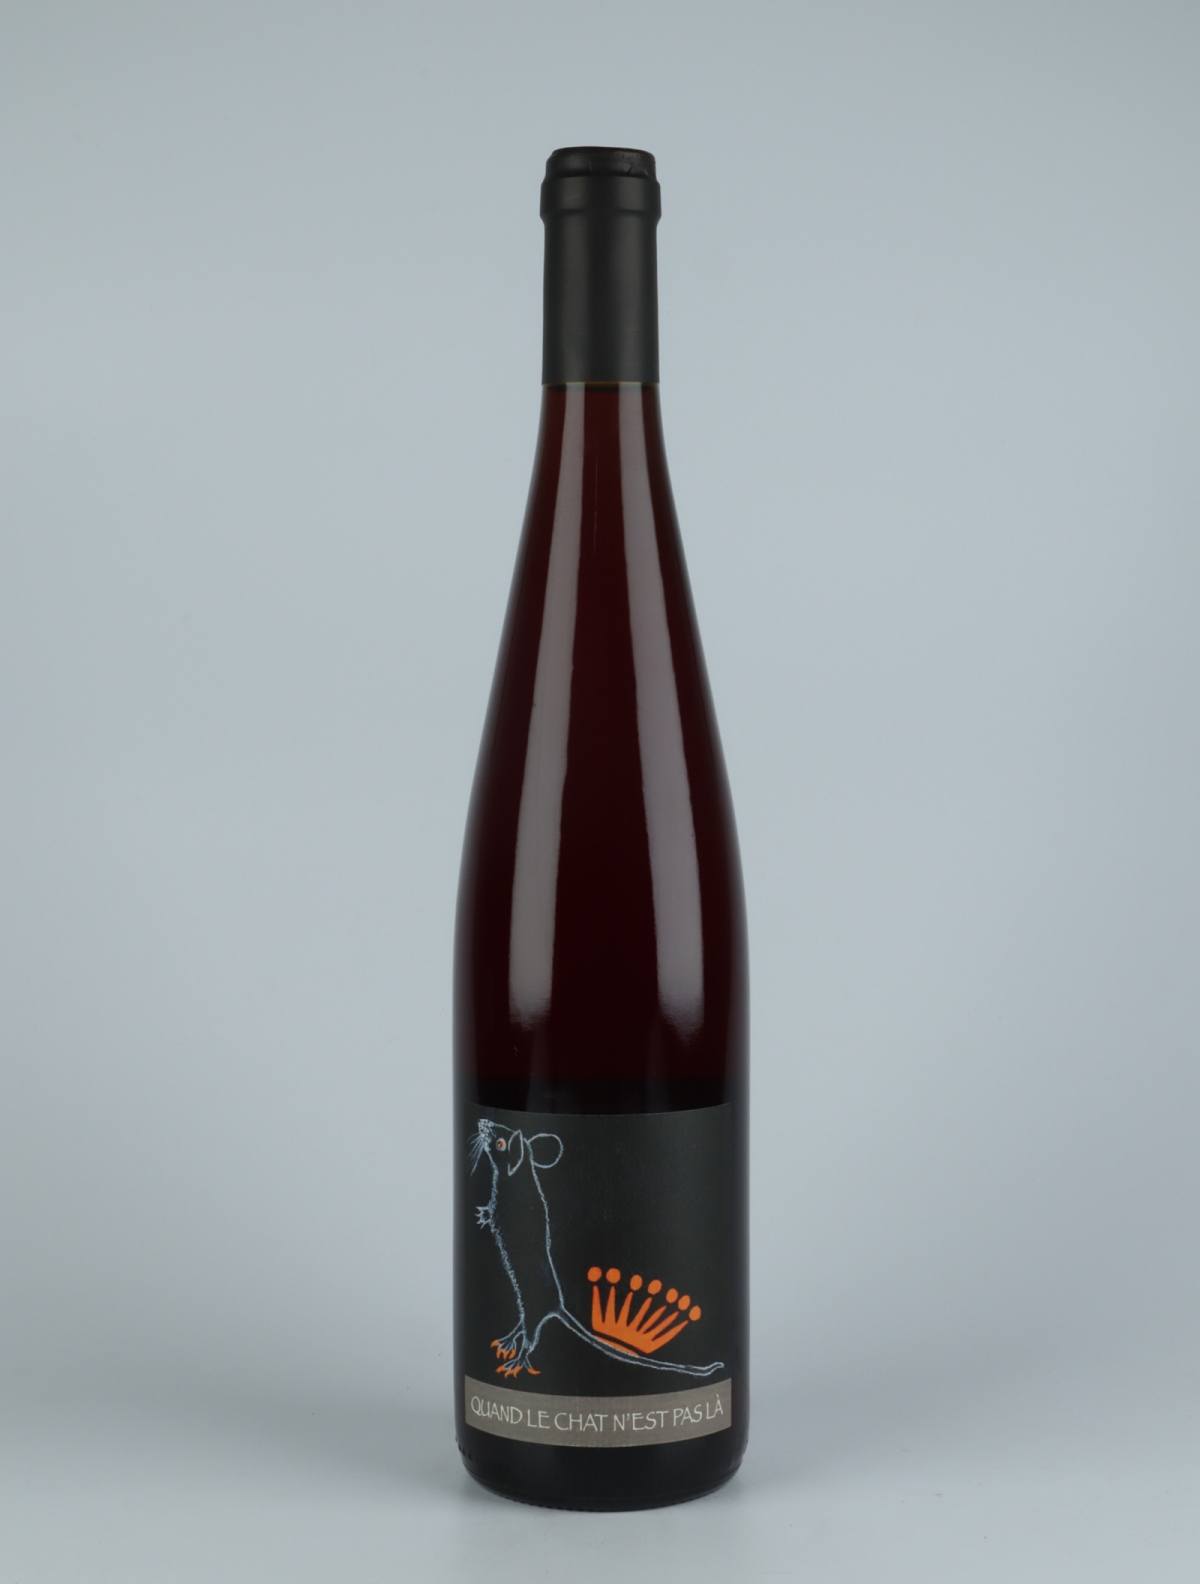 A bottle  Quand le Chat n'est pas la Orange wine from Domaine Rietsch, Alsace in France